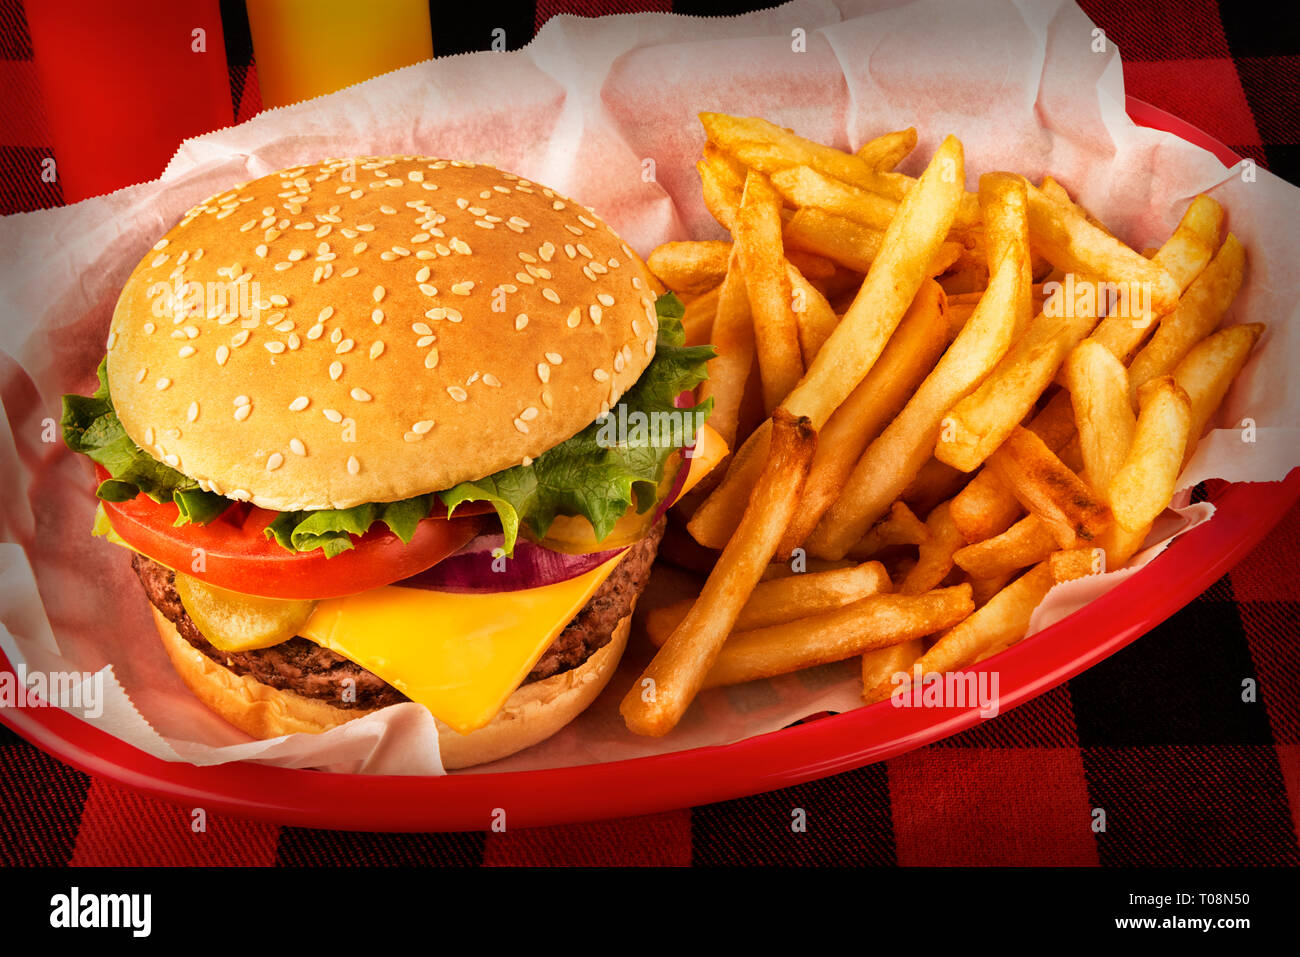 Burger und Pommes frites in Korb auf tartan Tischdecke. Ketchup und Senf Flasche im Hintergrund. Close Up. Stockfoto